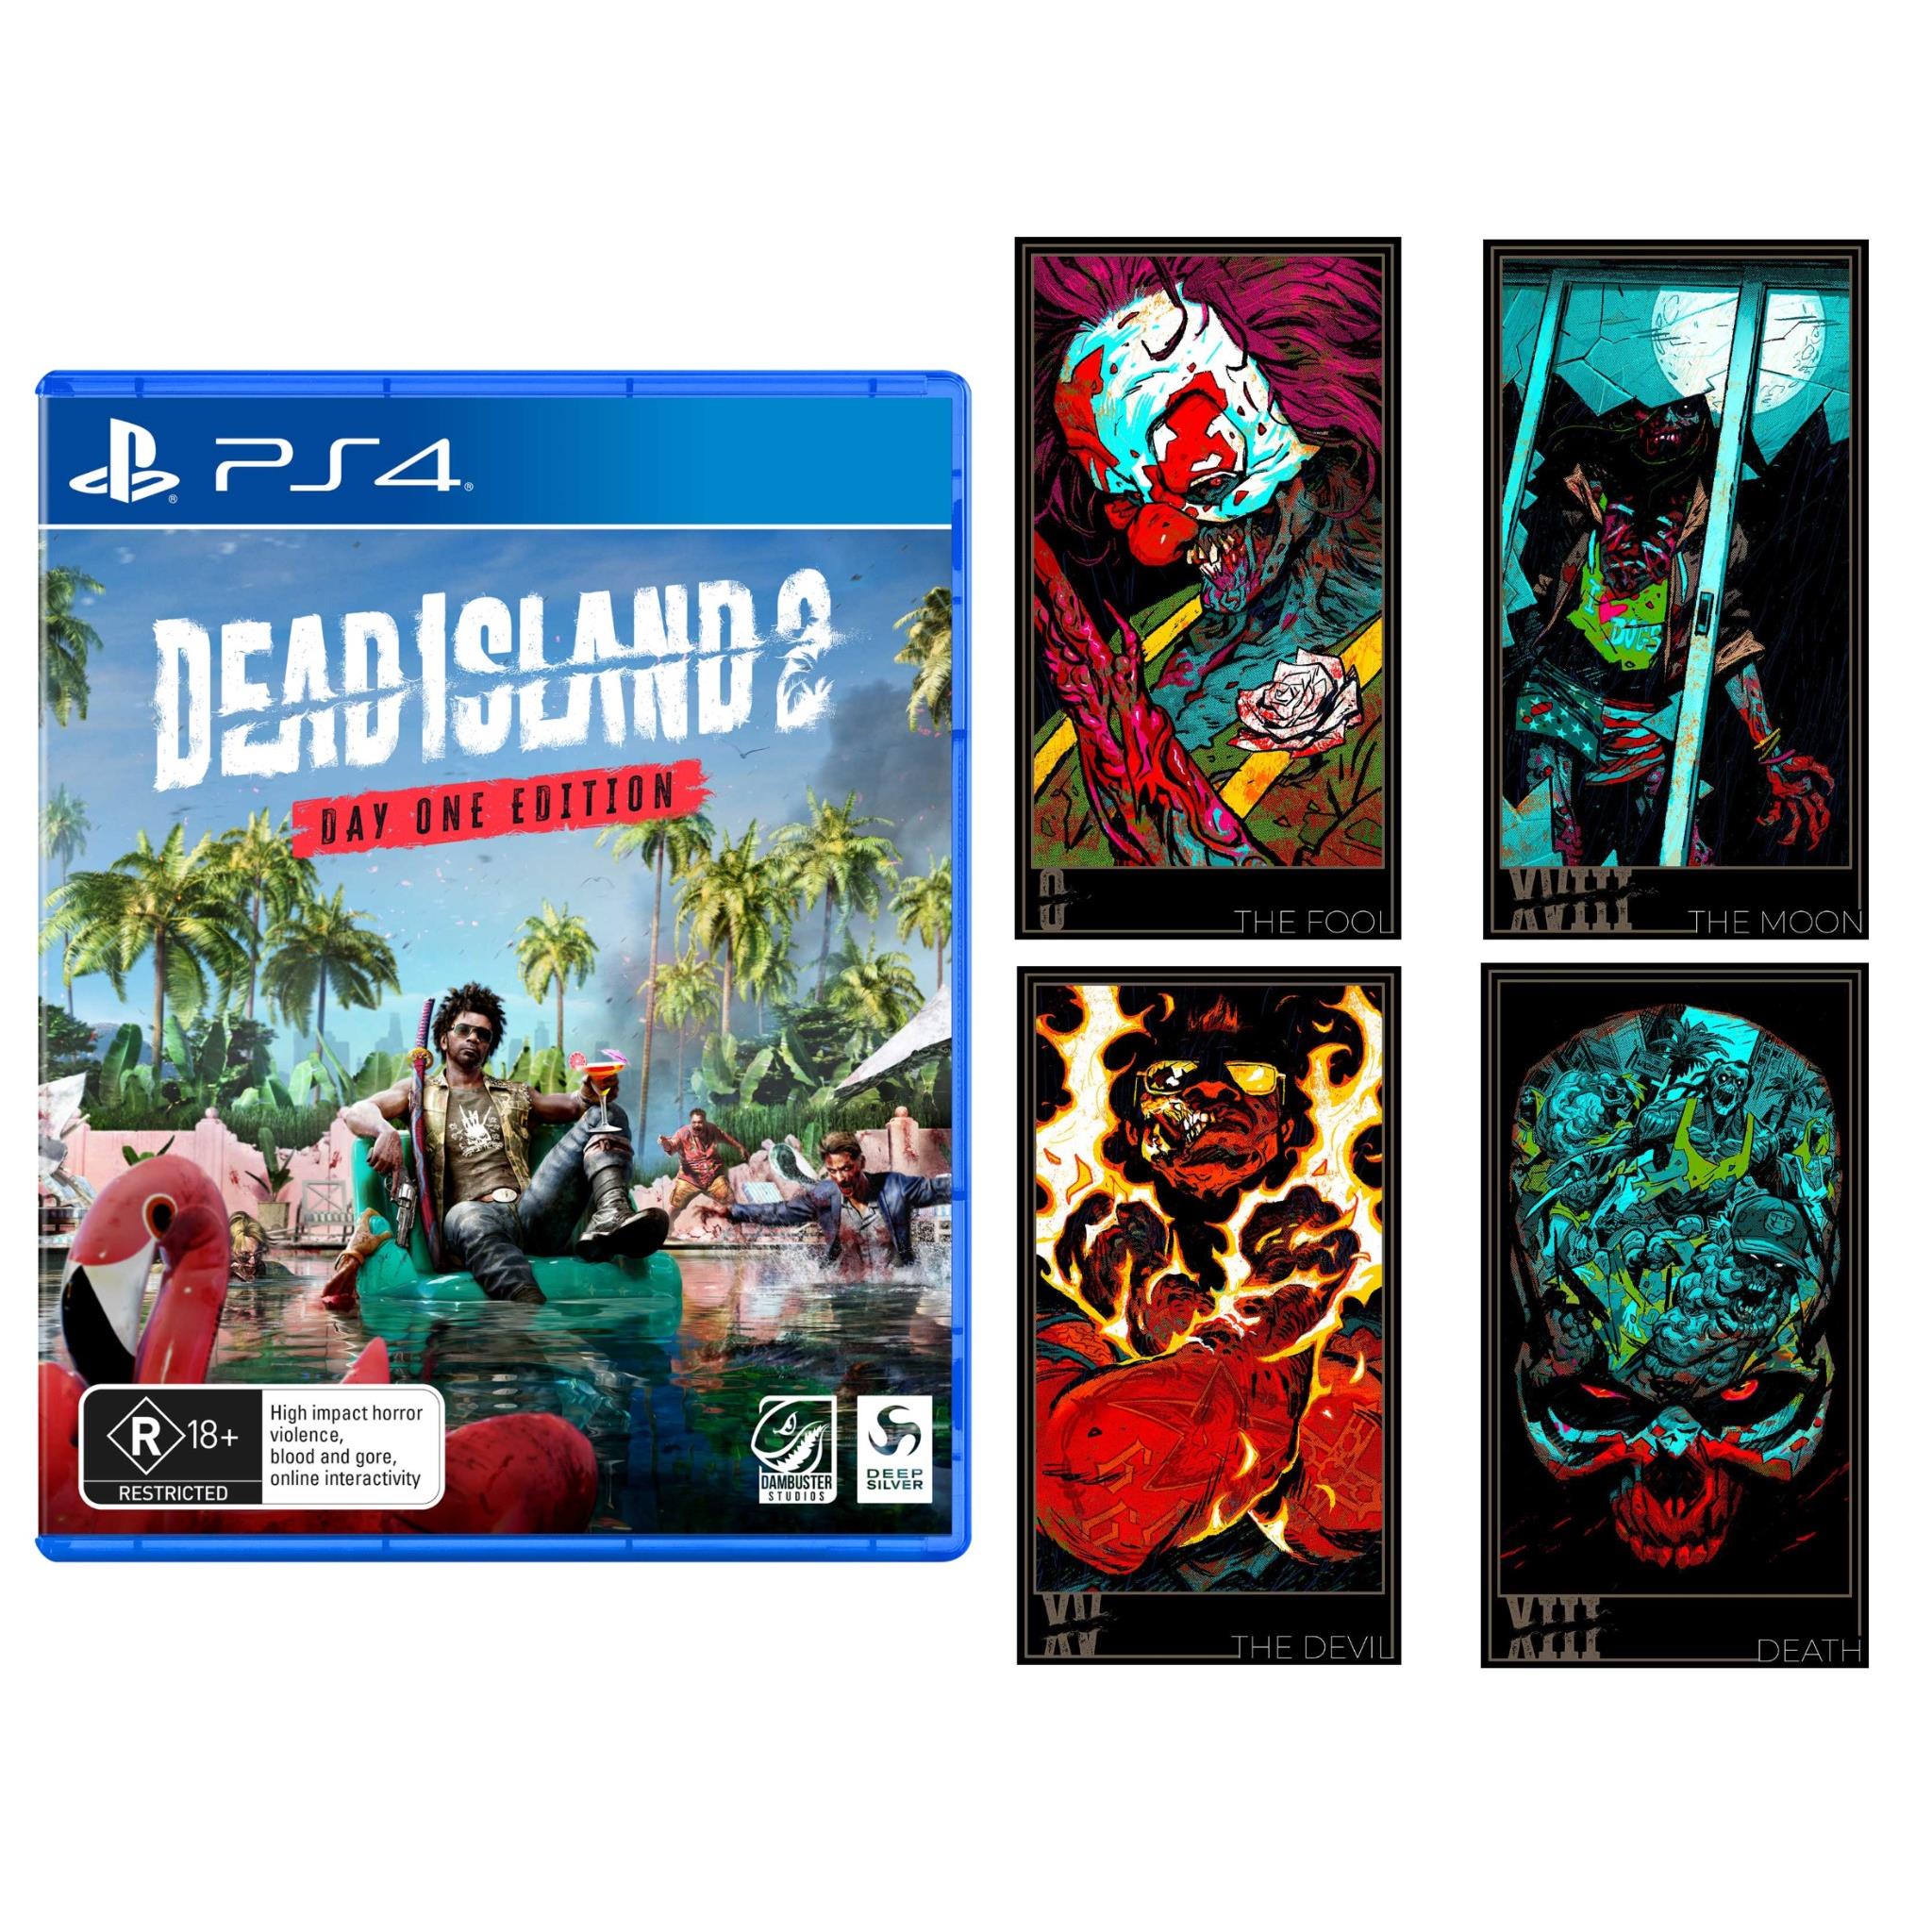 Dead Island Definitive Edition AR XBOX One CD Key